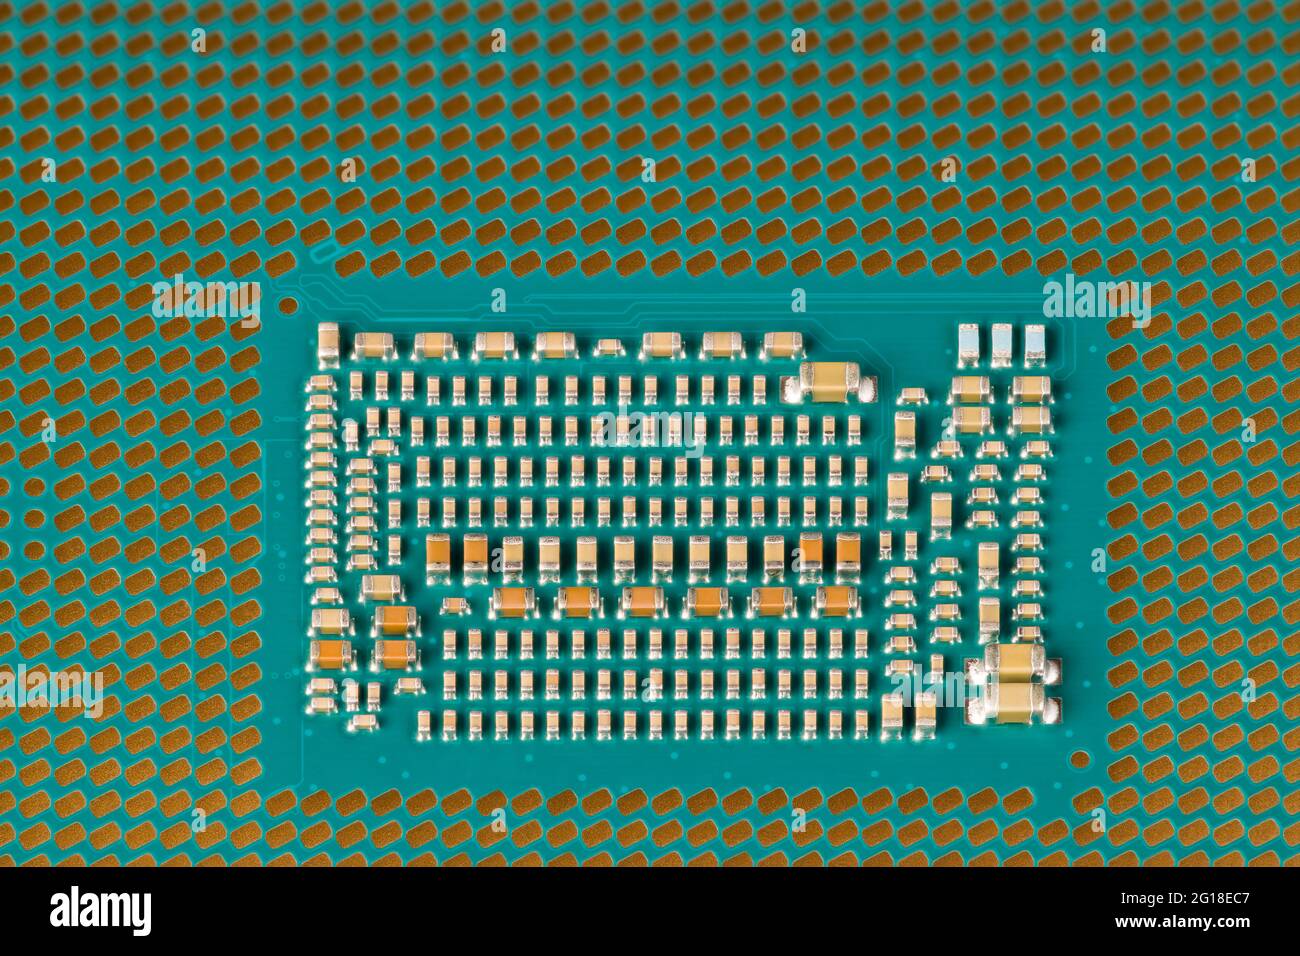 Dettaglio del moderno microprocessore della scheda madre del computer. Imballaggio con array di griglie terrestri. Unità centrale di elaborazione dal basso. Ingegneria elettrica. Tecnologia. Foto Stock